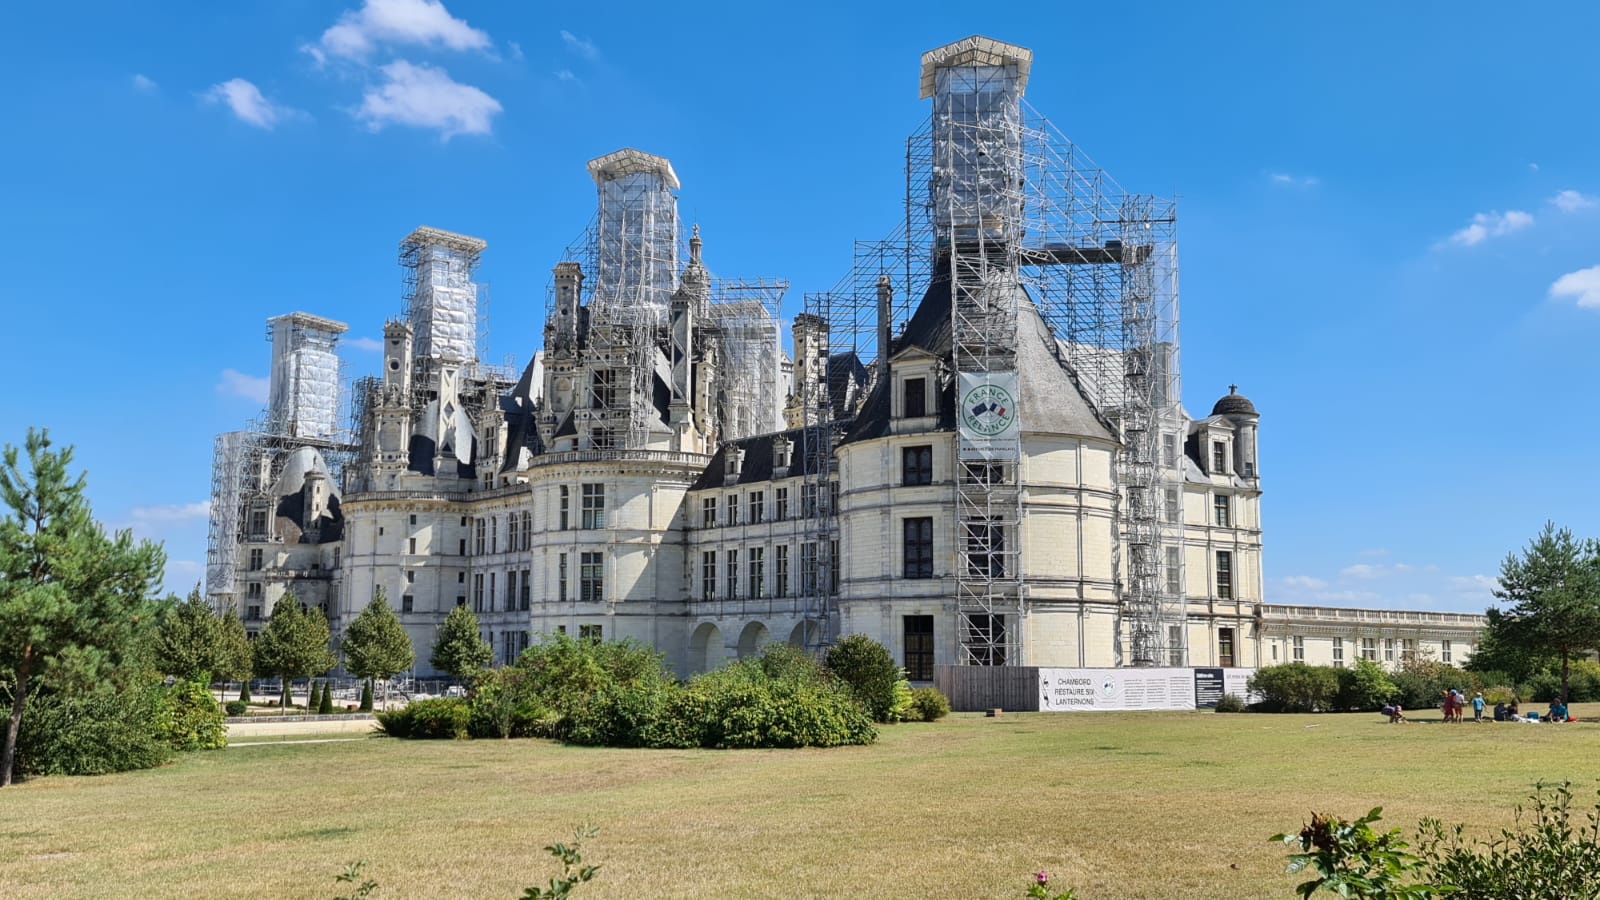 Castillos del Valle del Loira: Rutas, visitas - Francia - Forum France